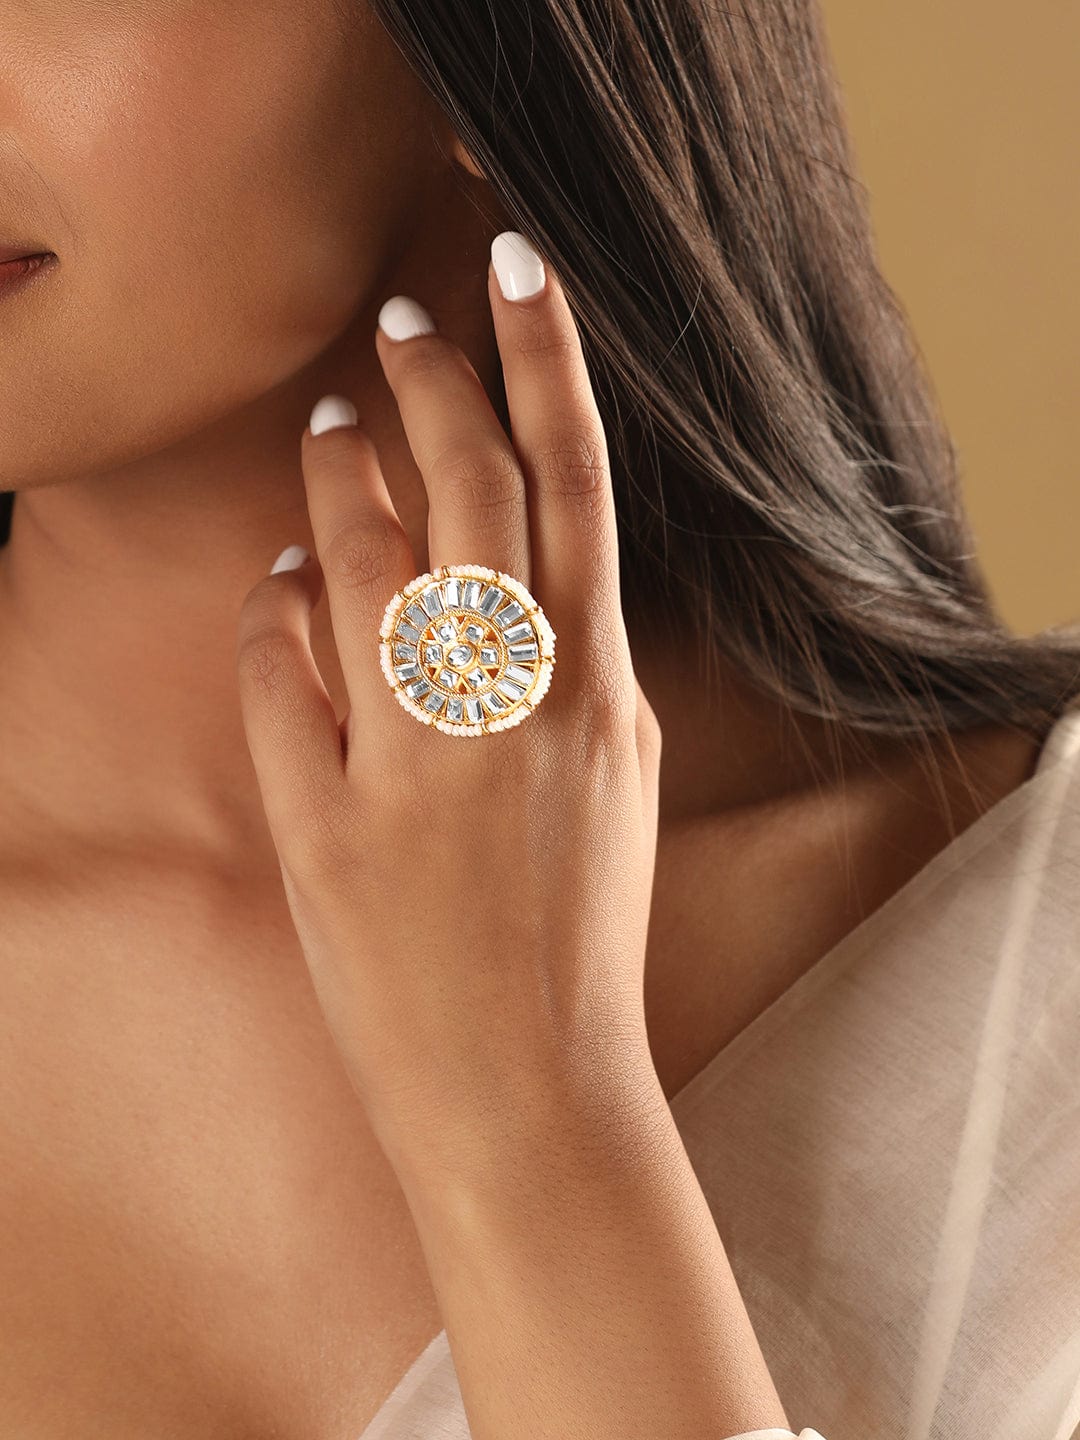 Rubans Gold-Plated Kundan Studded Finger Ring Earrings